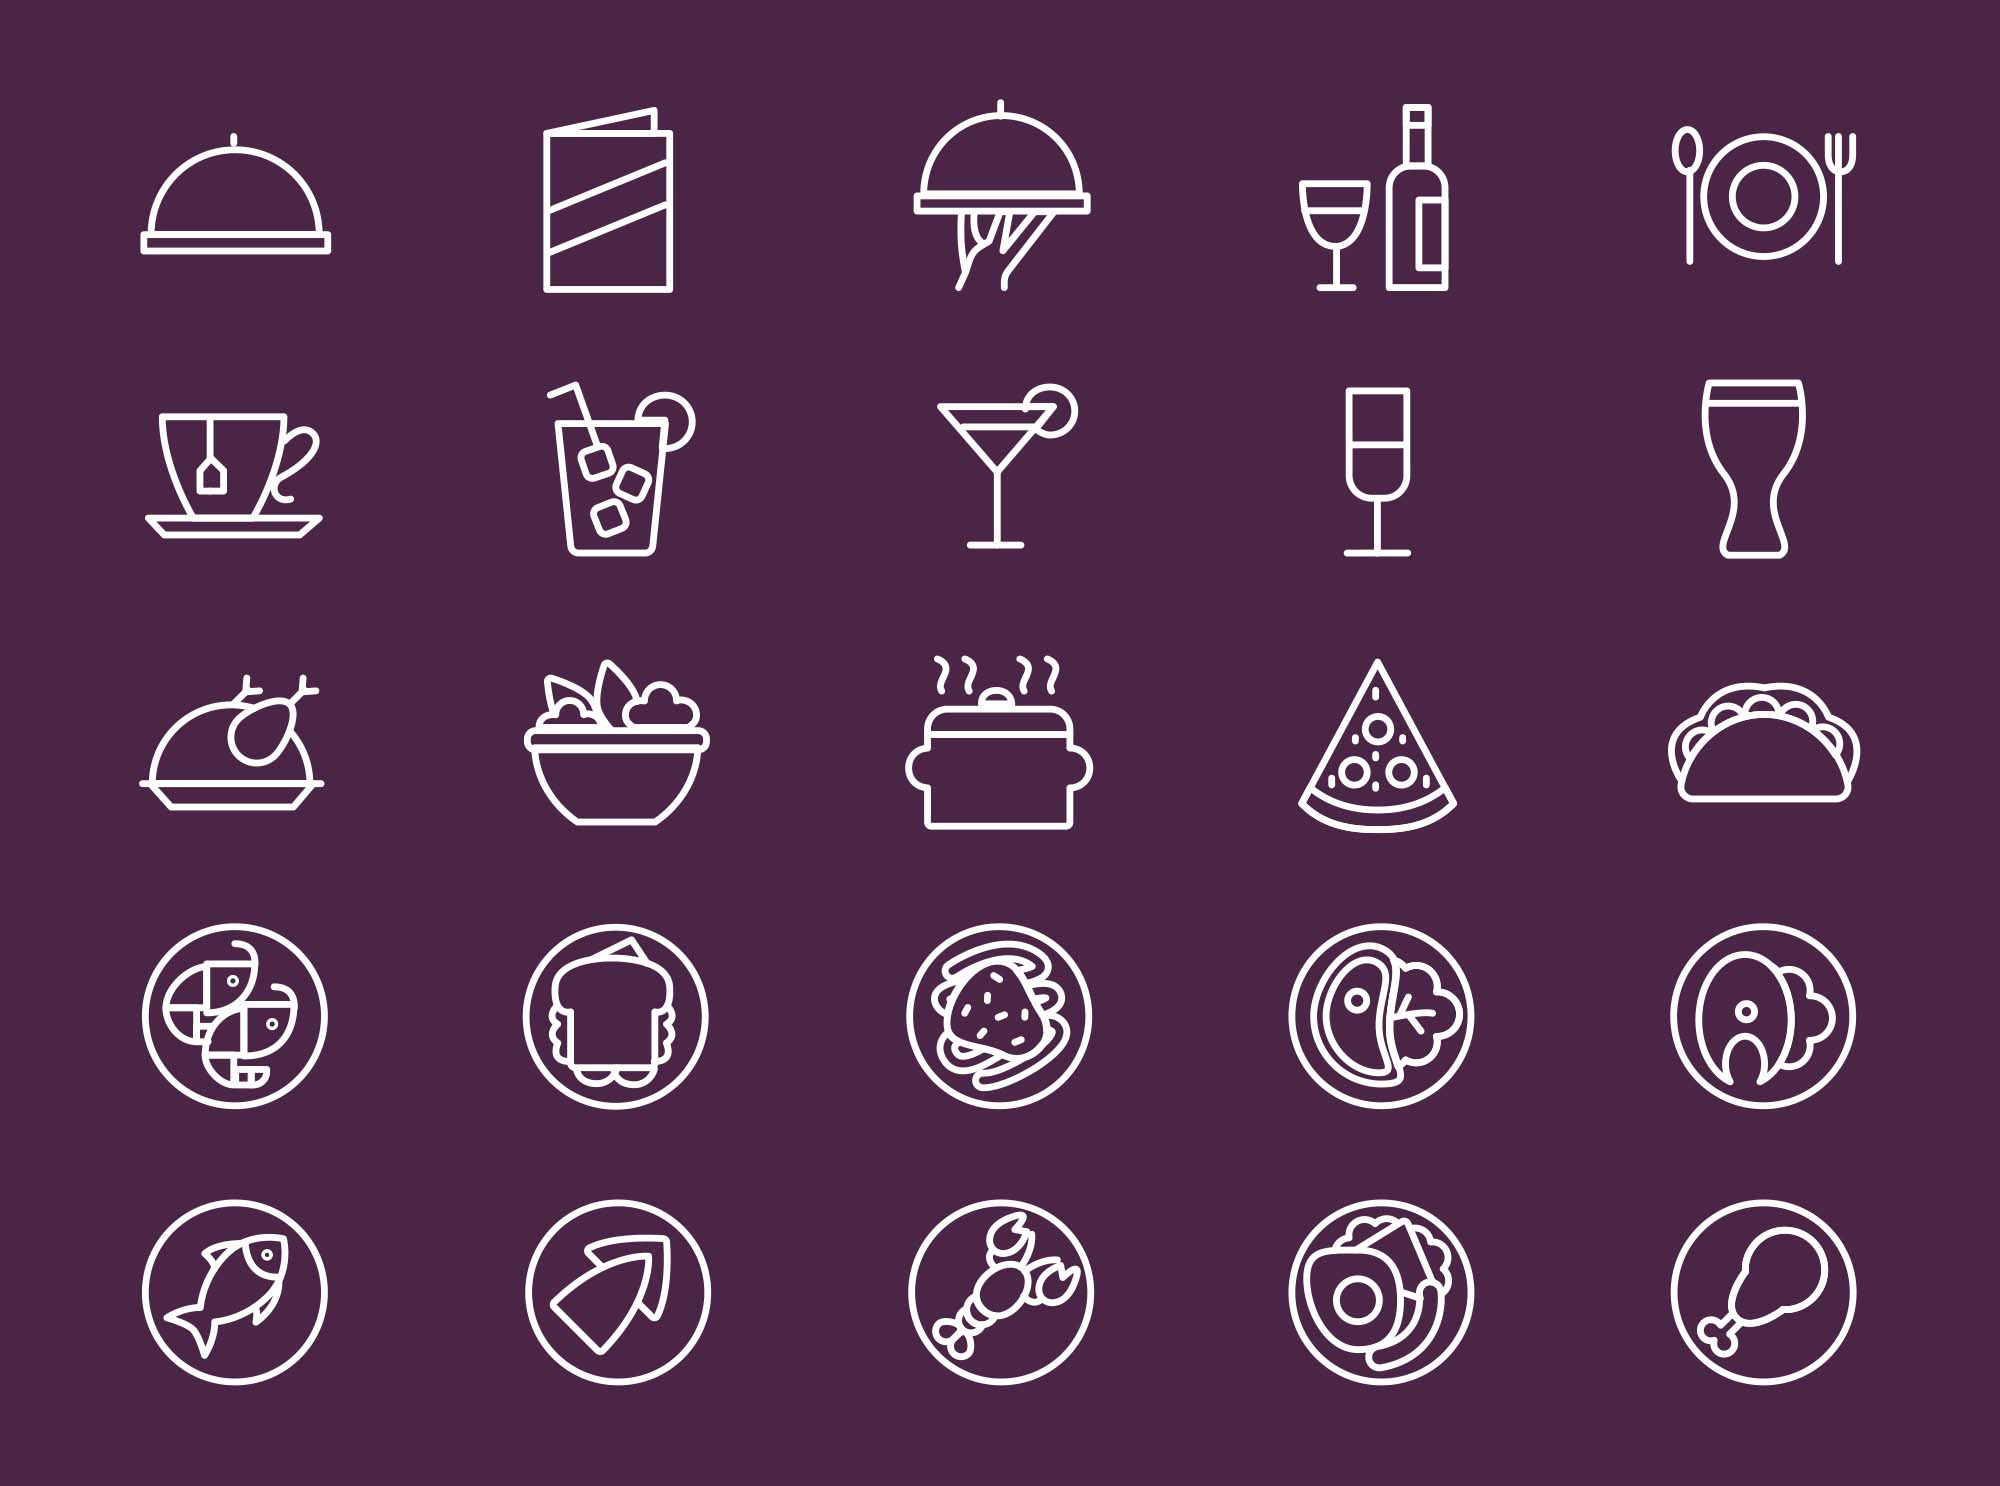 25枚餐厅菜单设计 可用的矢量线性素材库精选图标 25 Restaurant Menu Icons插图